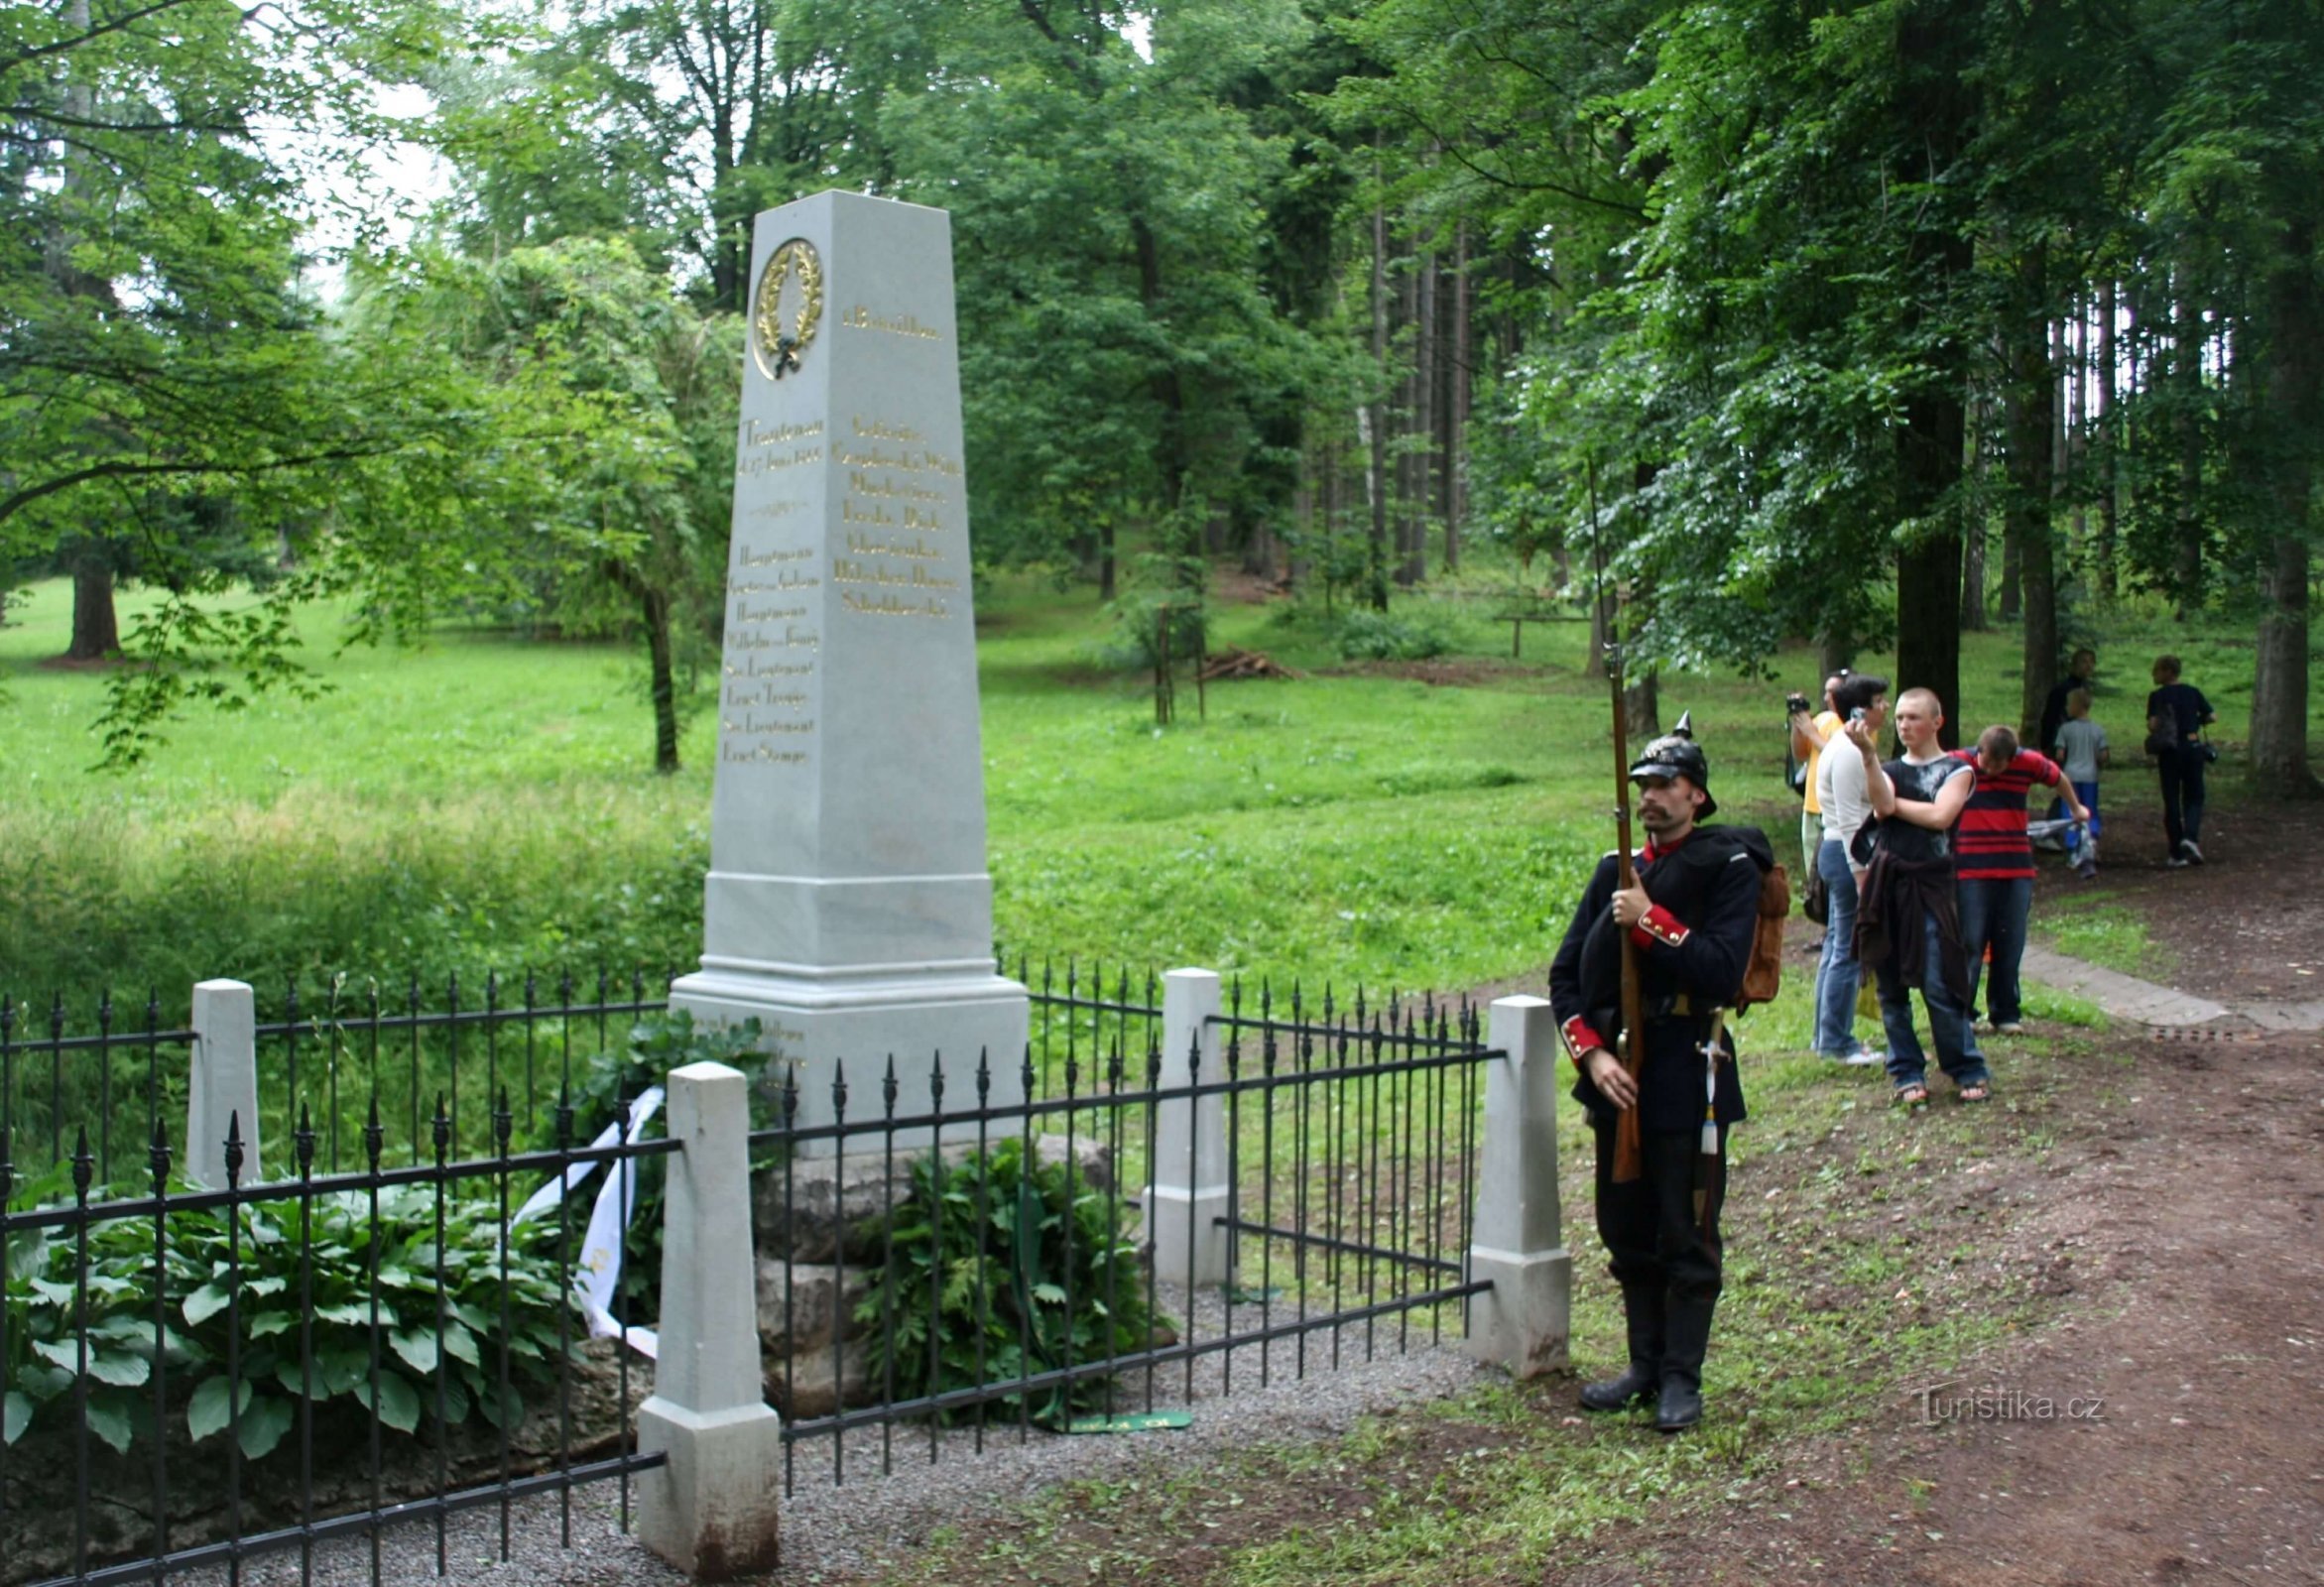 Trutnov, comentou NS walk O dia da batalha perto de Trutnov, memorial aos soldados caídos